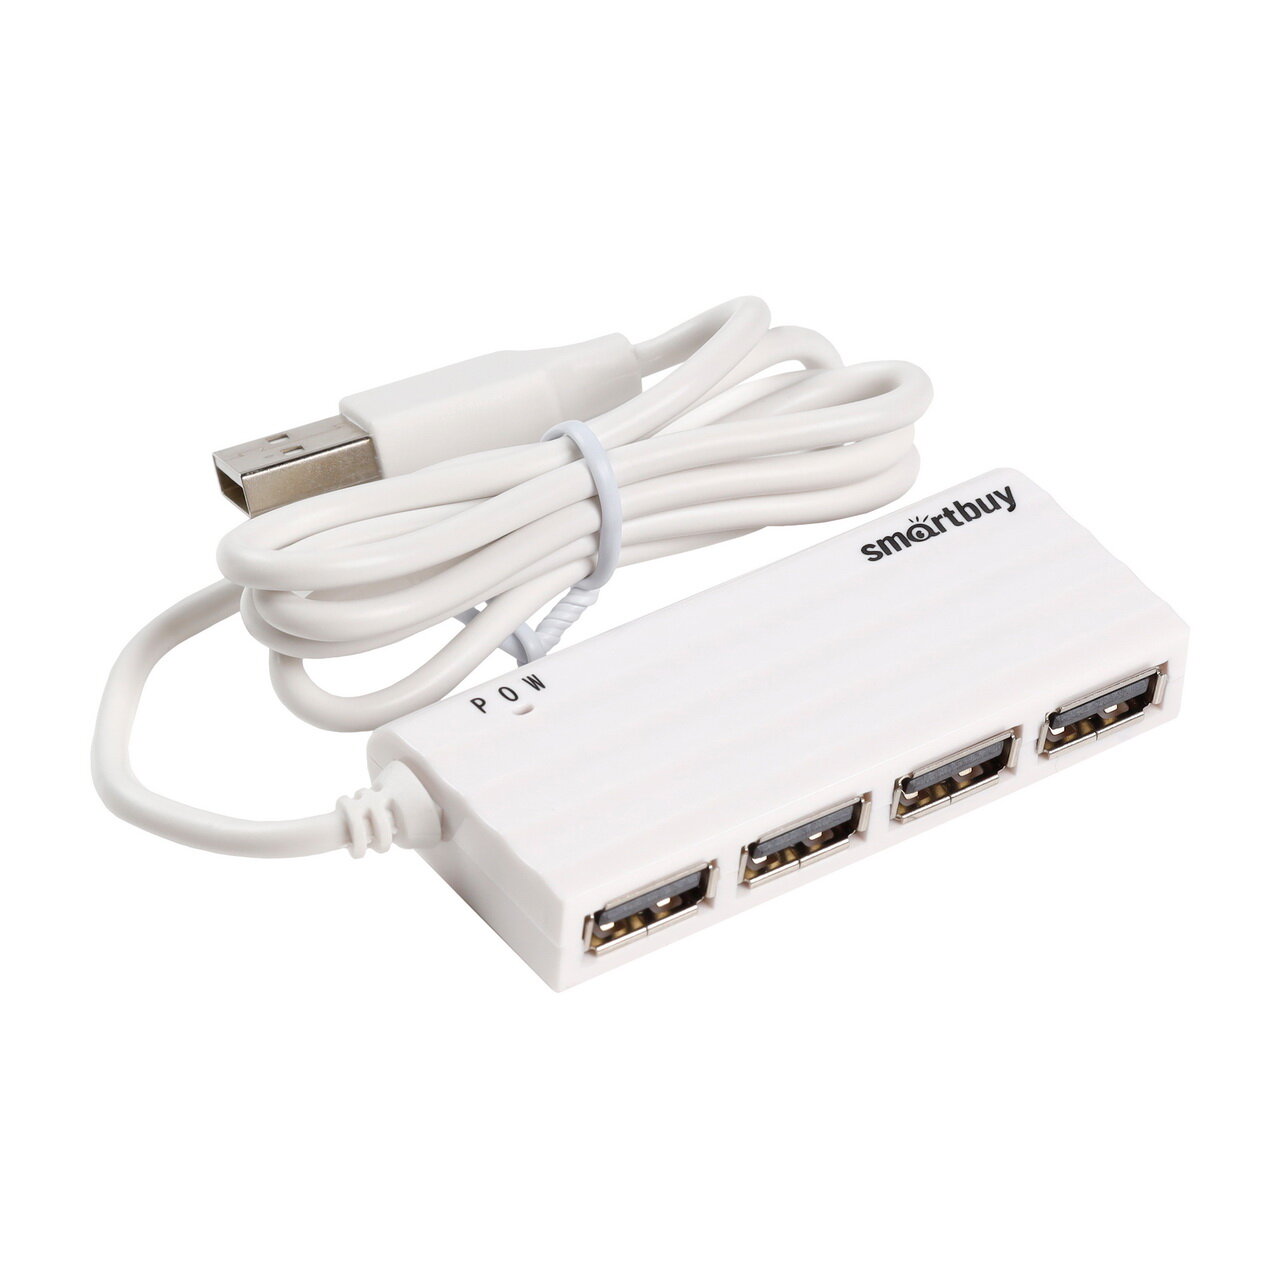 Картридер USB - Xaб SmartBuy SBHA-6810 -4 порта (белый)